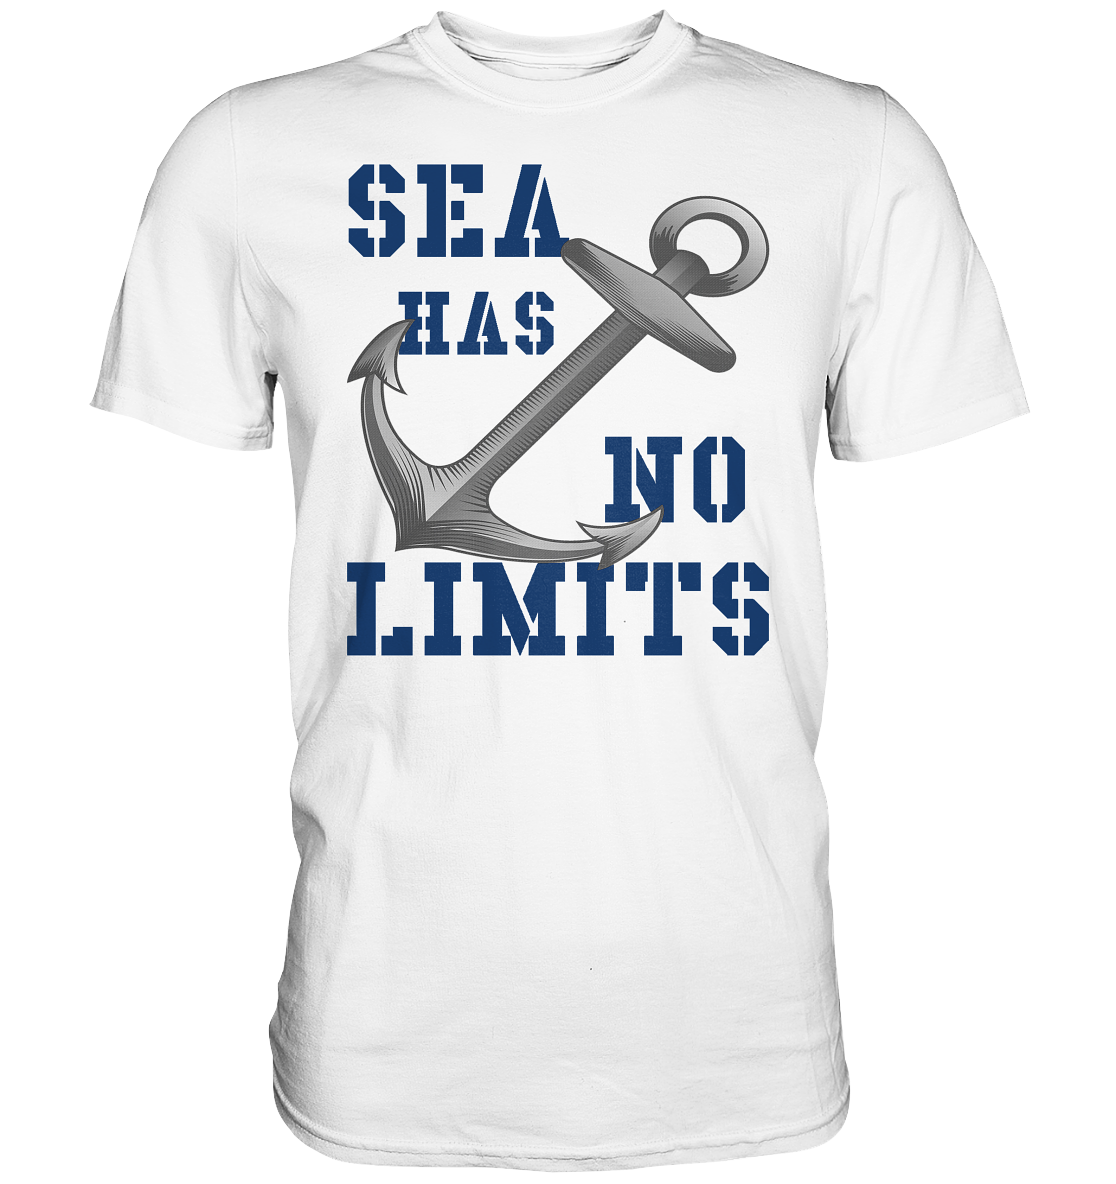 Sea has no limits - Premium Shirt